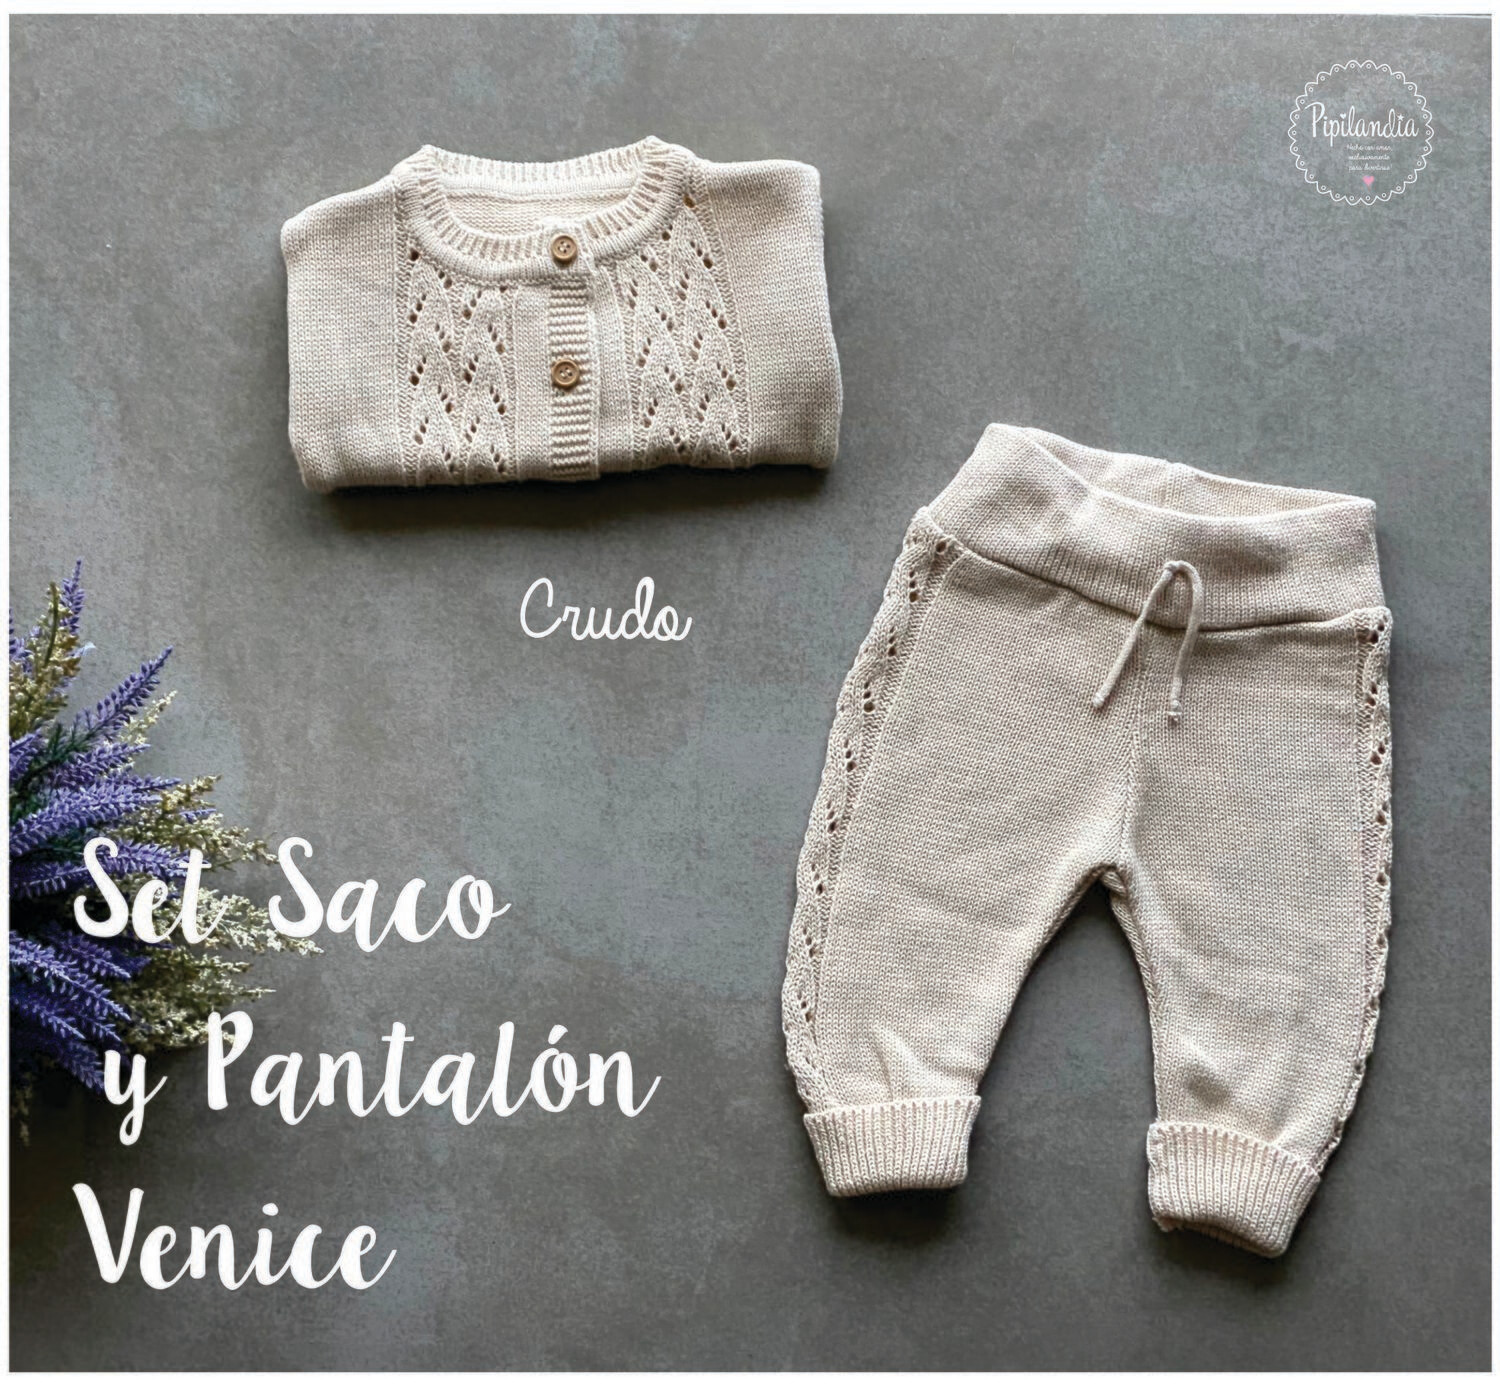 Set Saco y Pantalón Venice Crudo